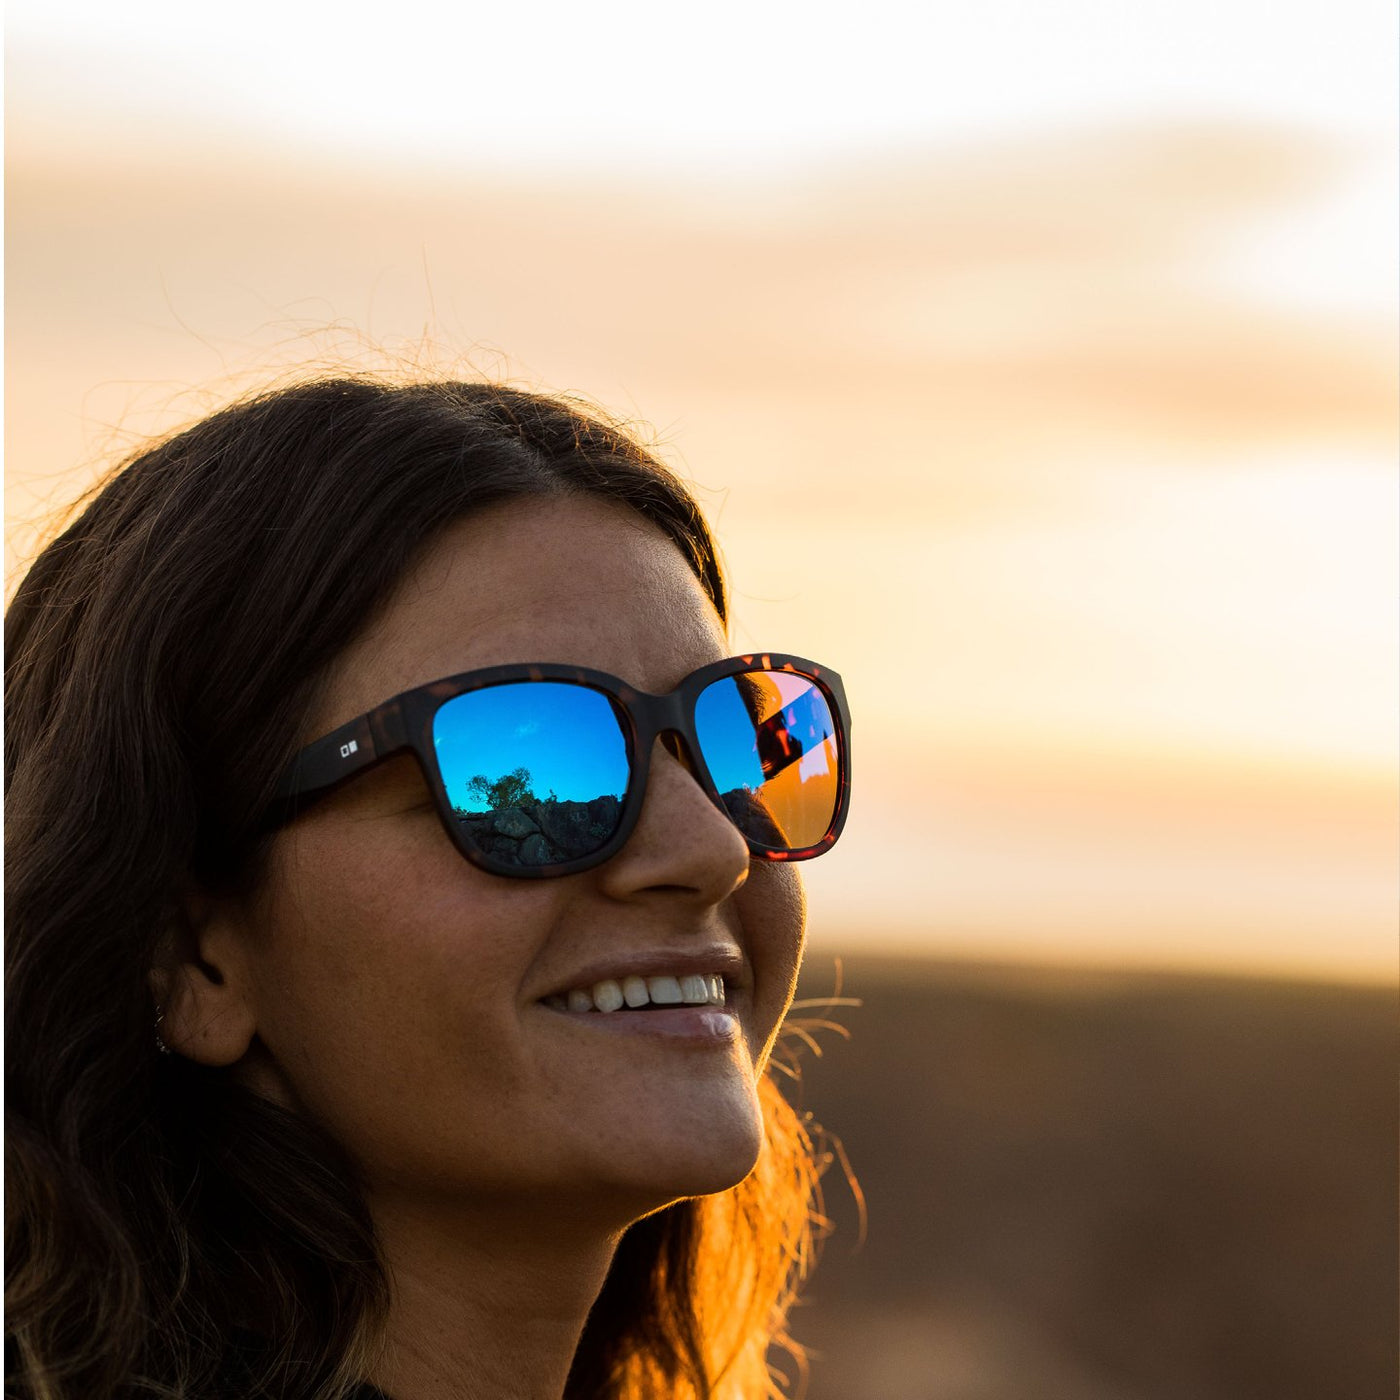 Woman wearing round reflective sunglasses